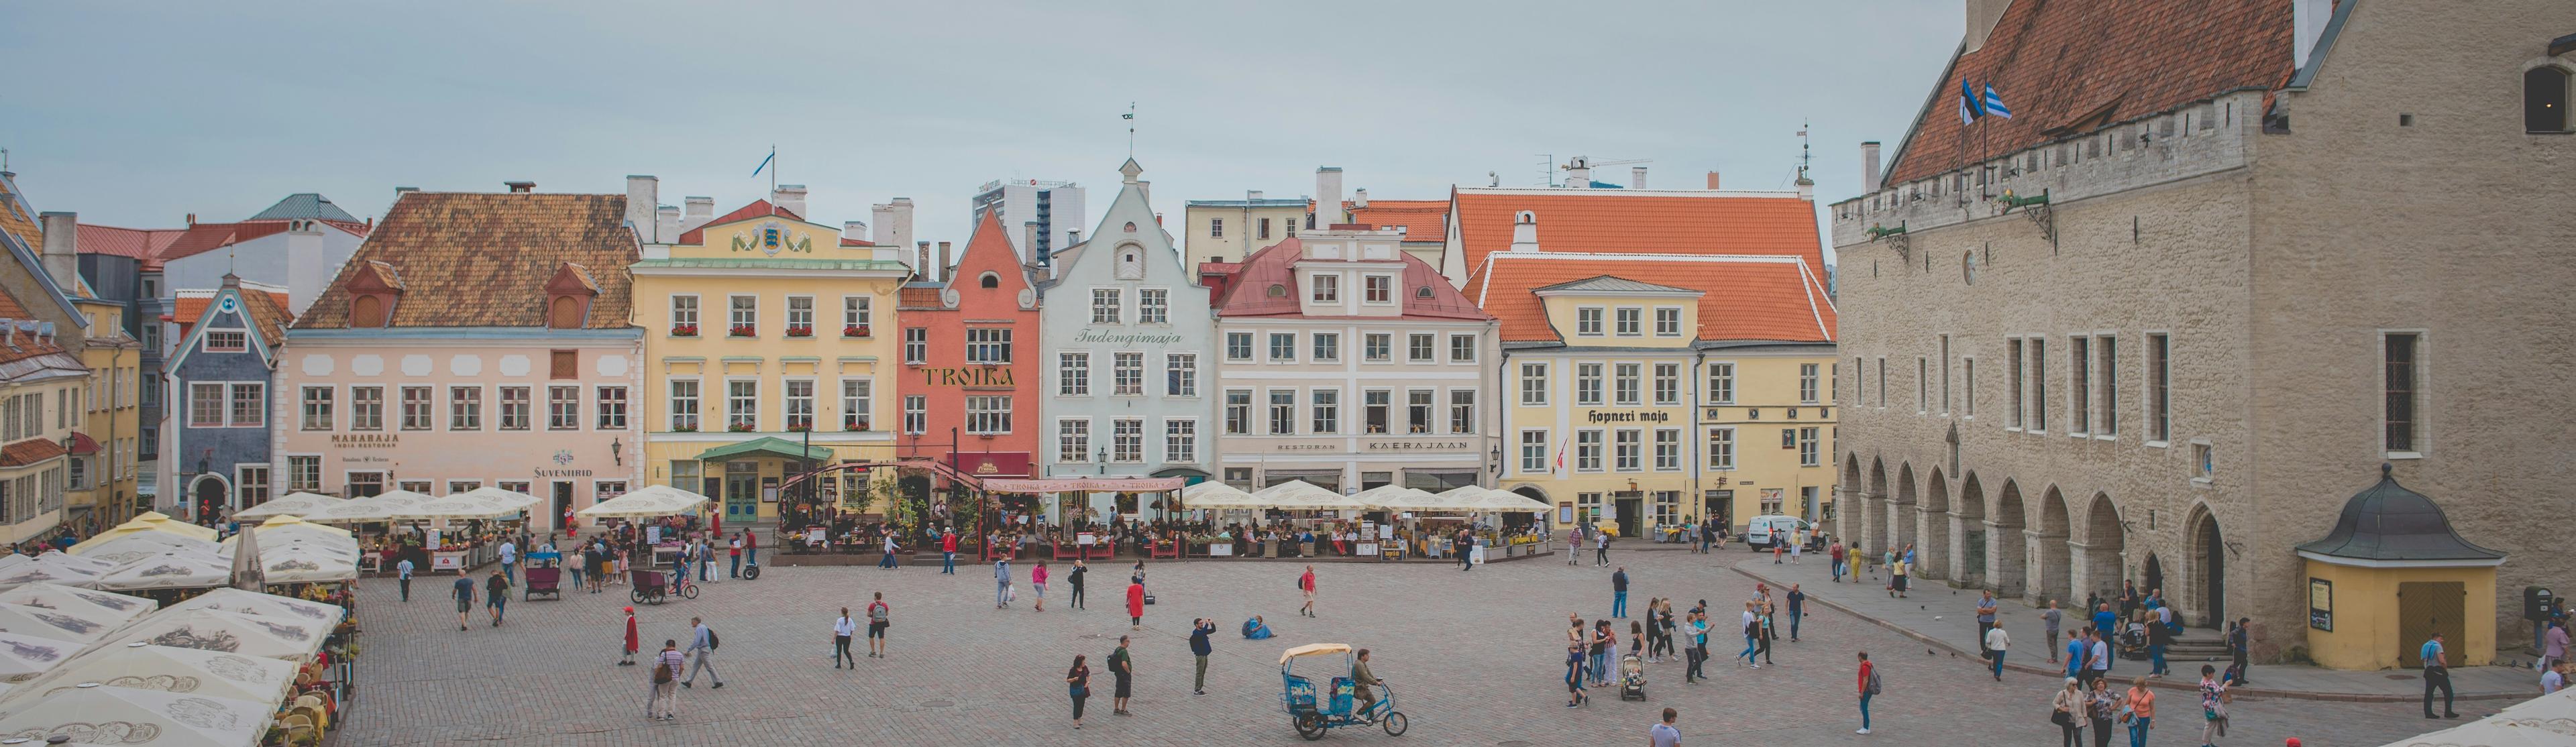 Estonia's Old town